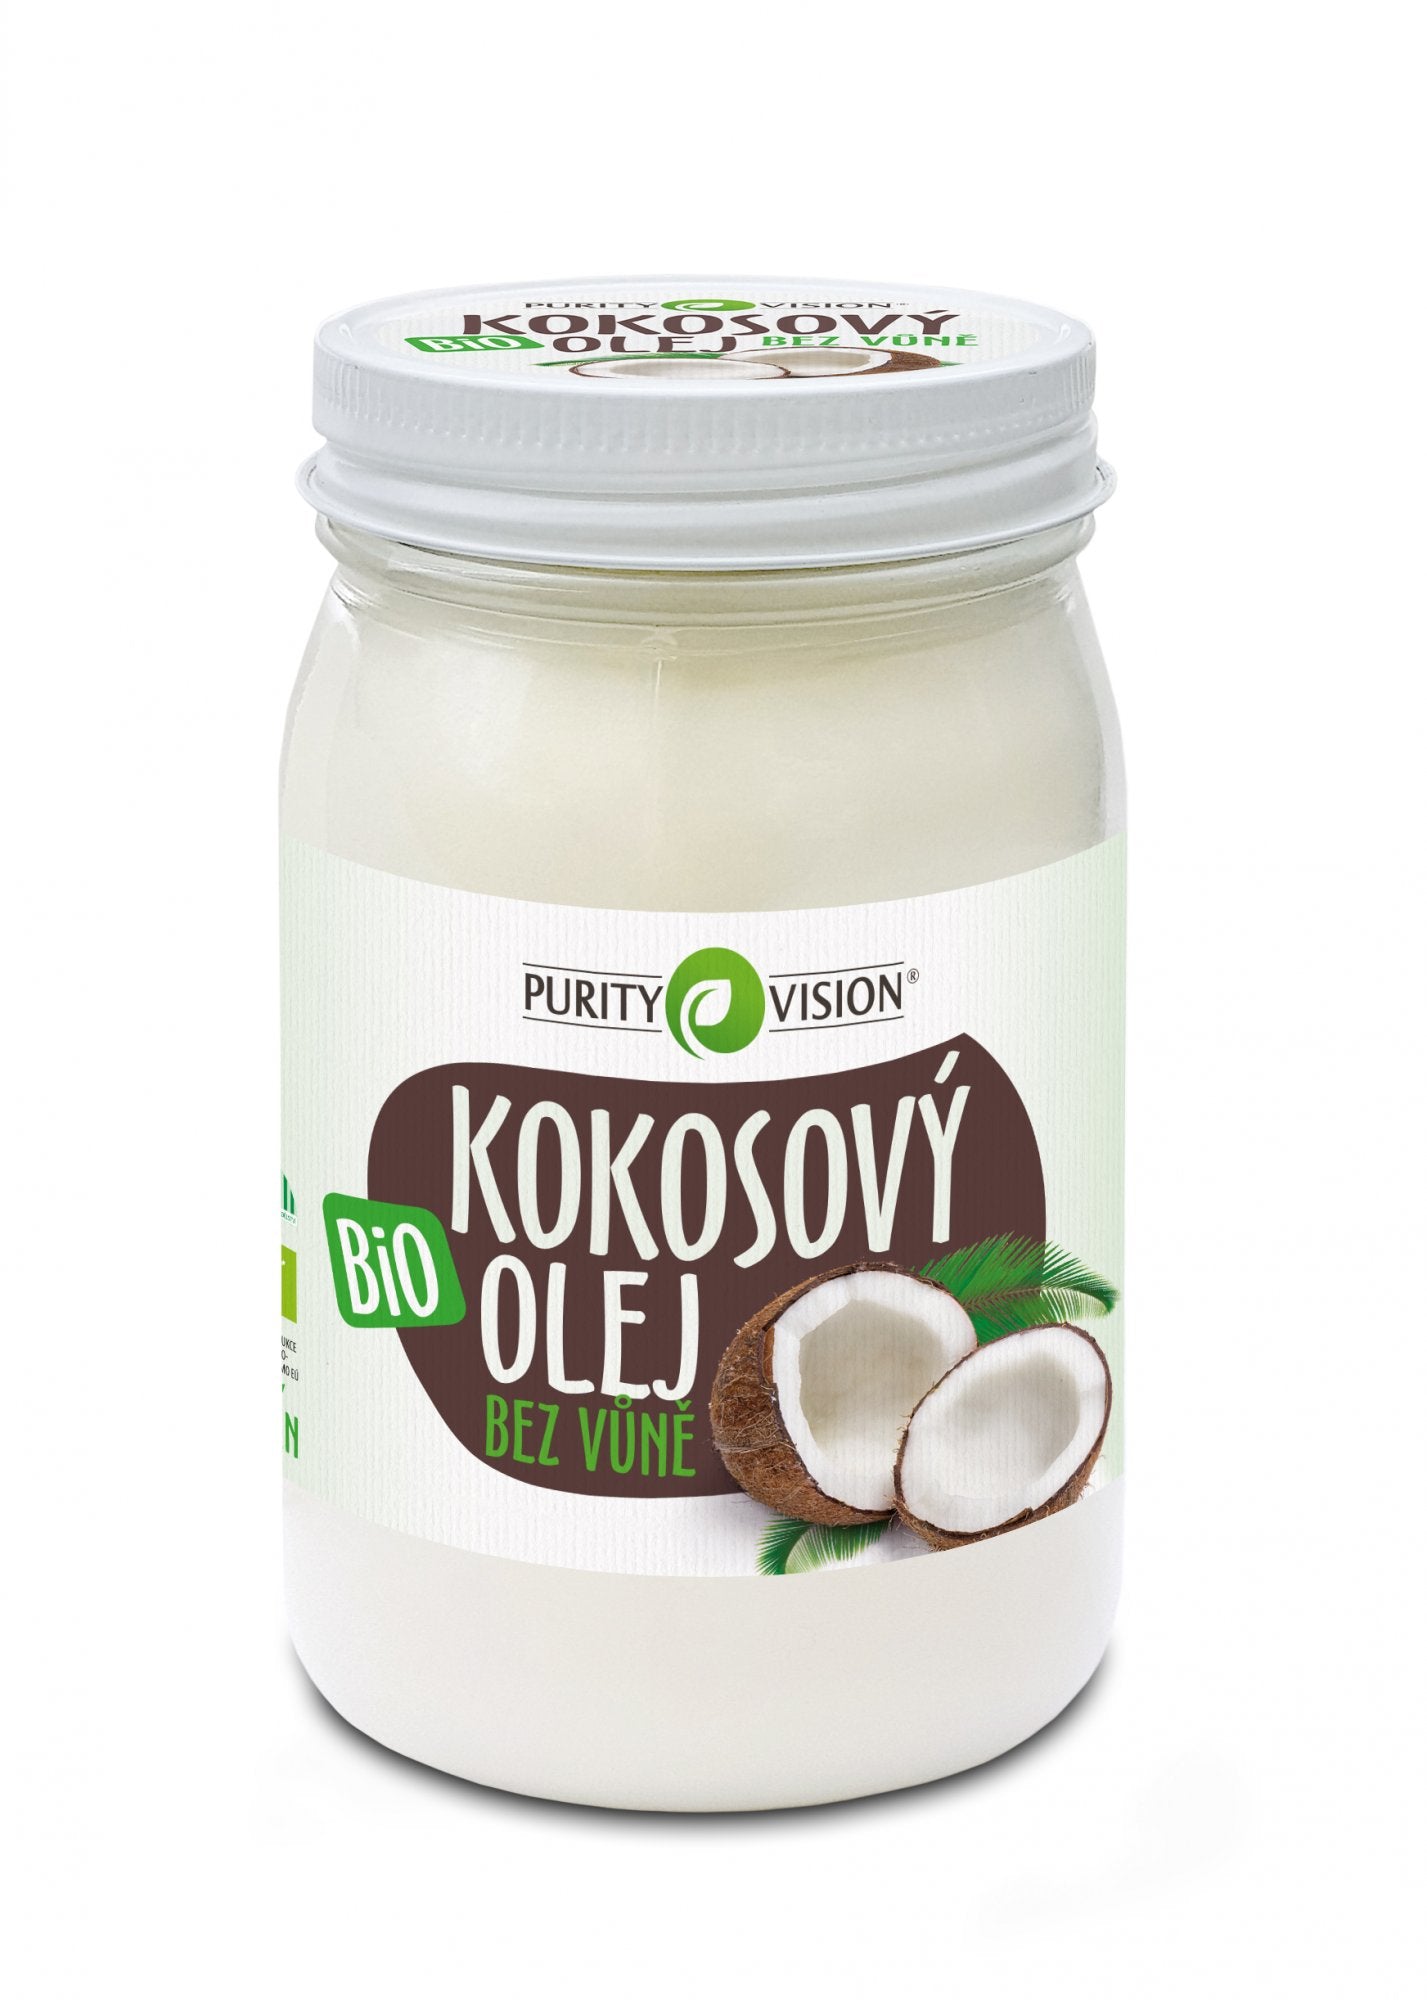 Purity Vision Kokosový olej bez vůně BIO 420 ml - bez typické kokosové vůně a chuti